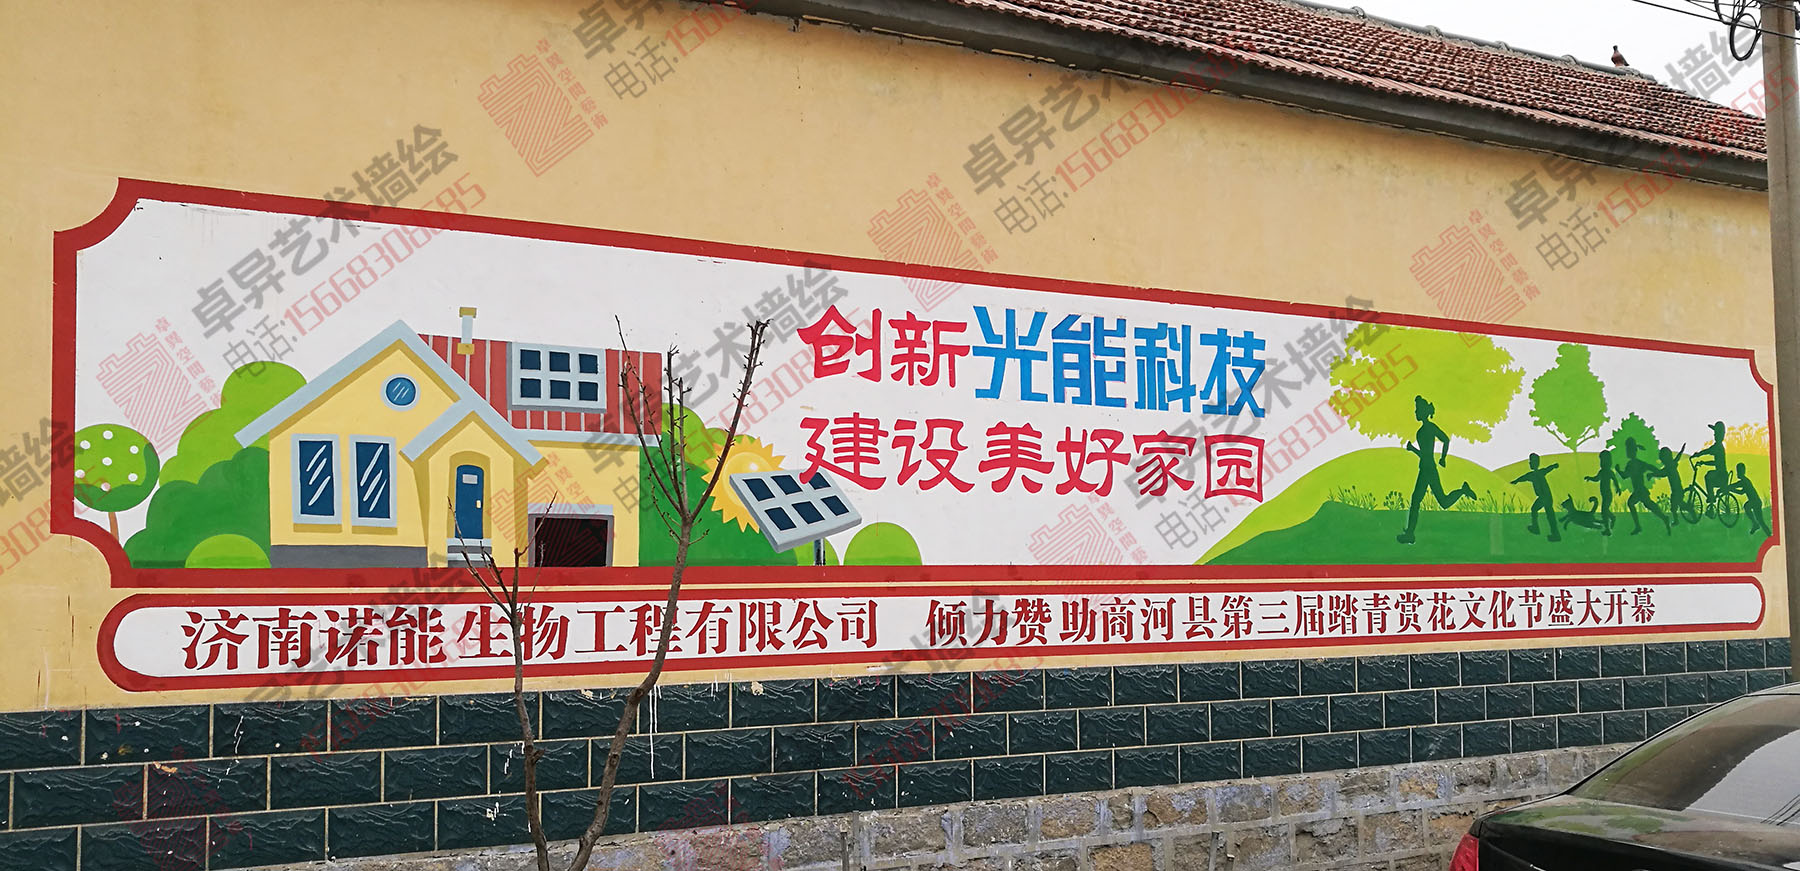 美丽乡村墙绘文化墙,乡村振兴墙画文化墙,农村墙体彩绘,新农村墙绘